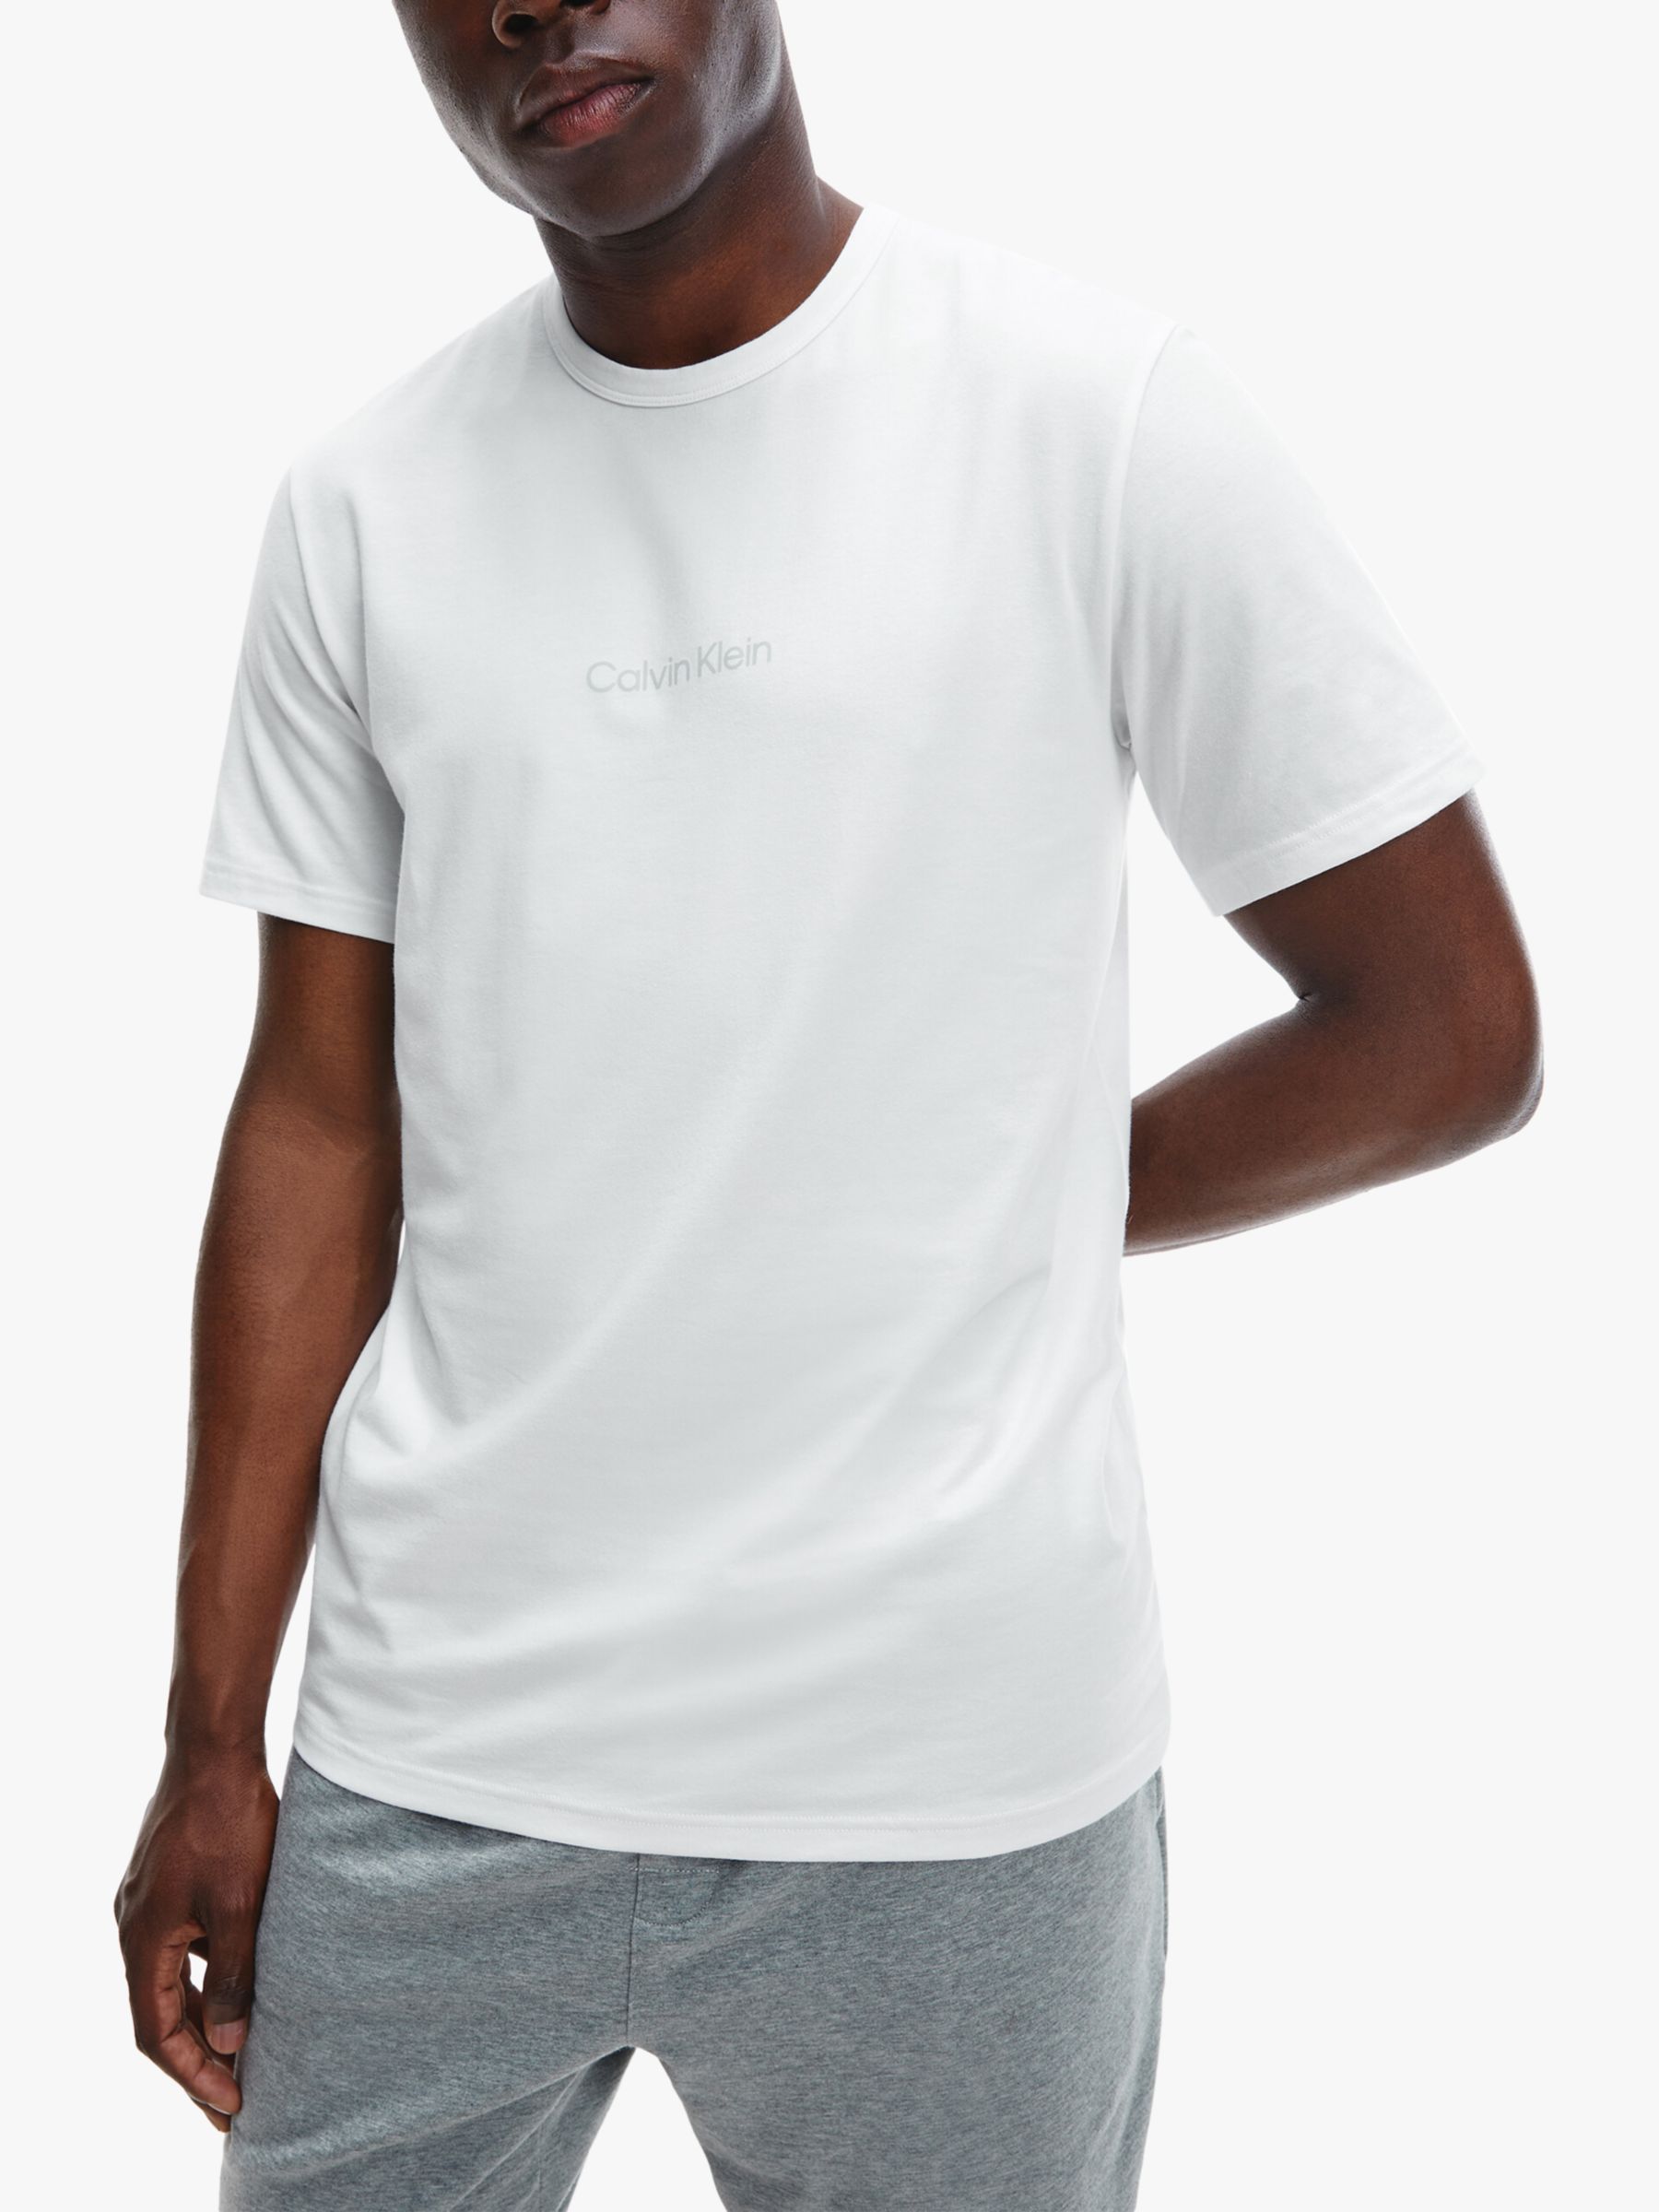 Calvin Klein Crew Neck Logo Lounge T-Shirt, White at John Lewis & Partners